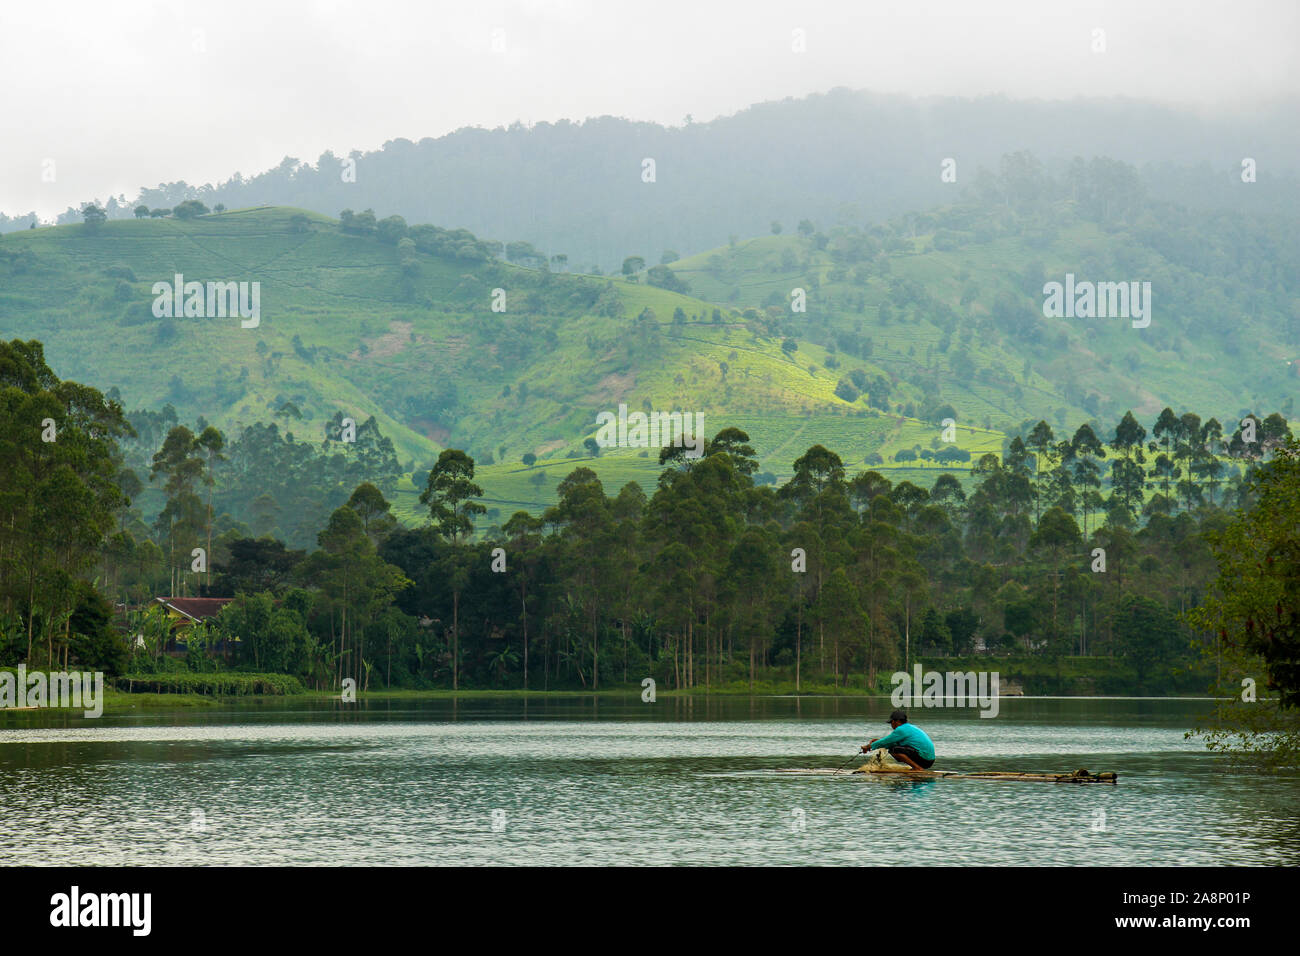 Pescatore indonesiano su zattera di bambù con collina in background, al Lago Cileunca, Pangalengan, Bandung, West Java, Indonesia Foto Stock